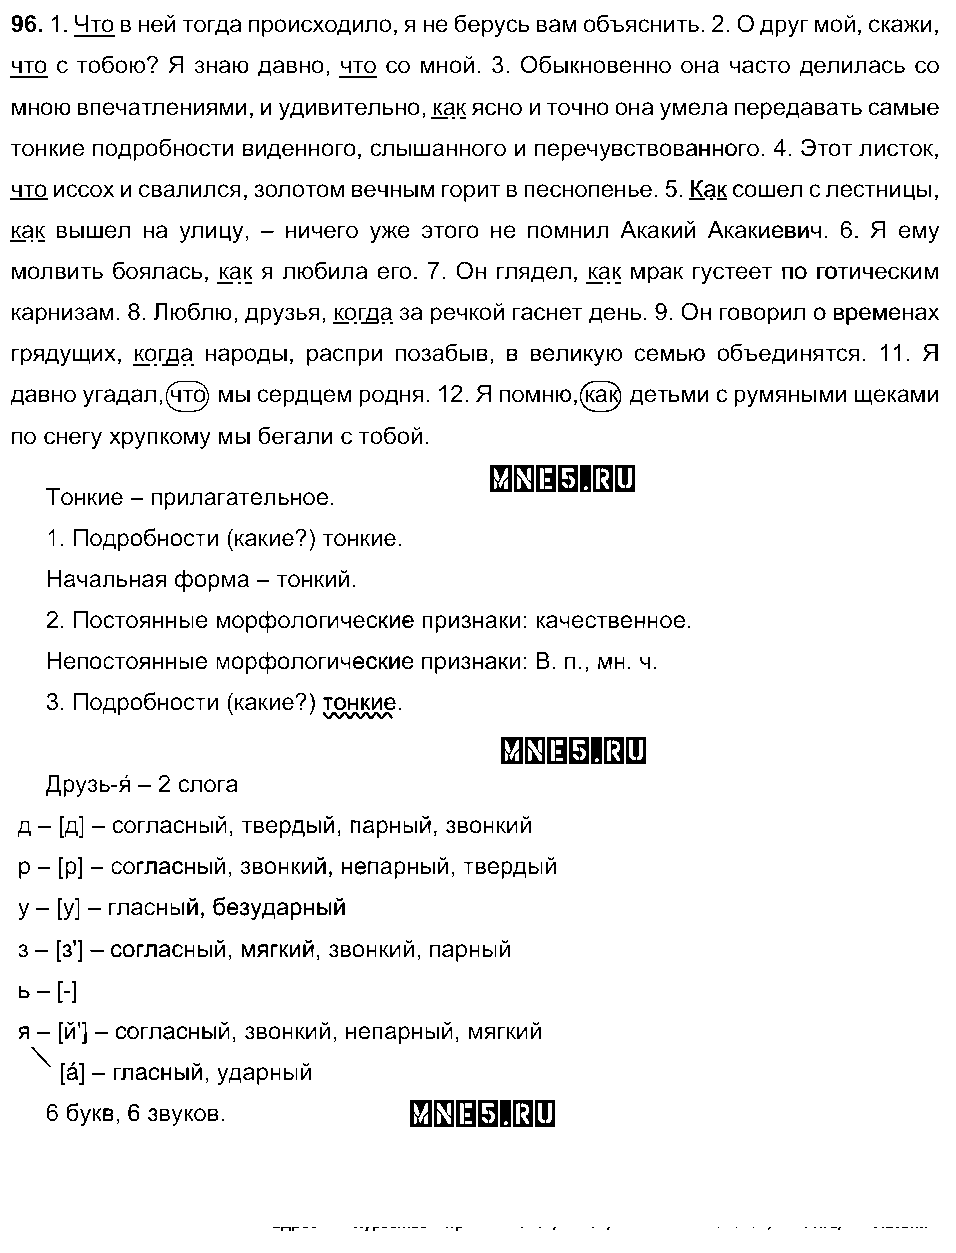 ГДЗ Русский язык 9 класс - 96